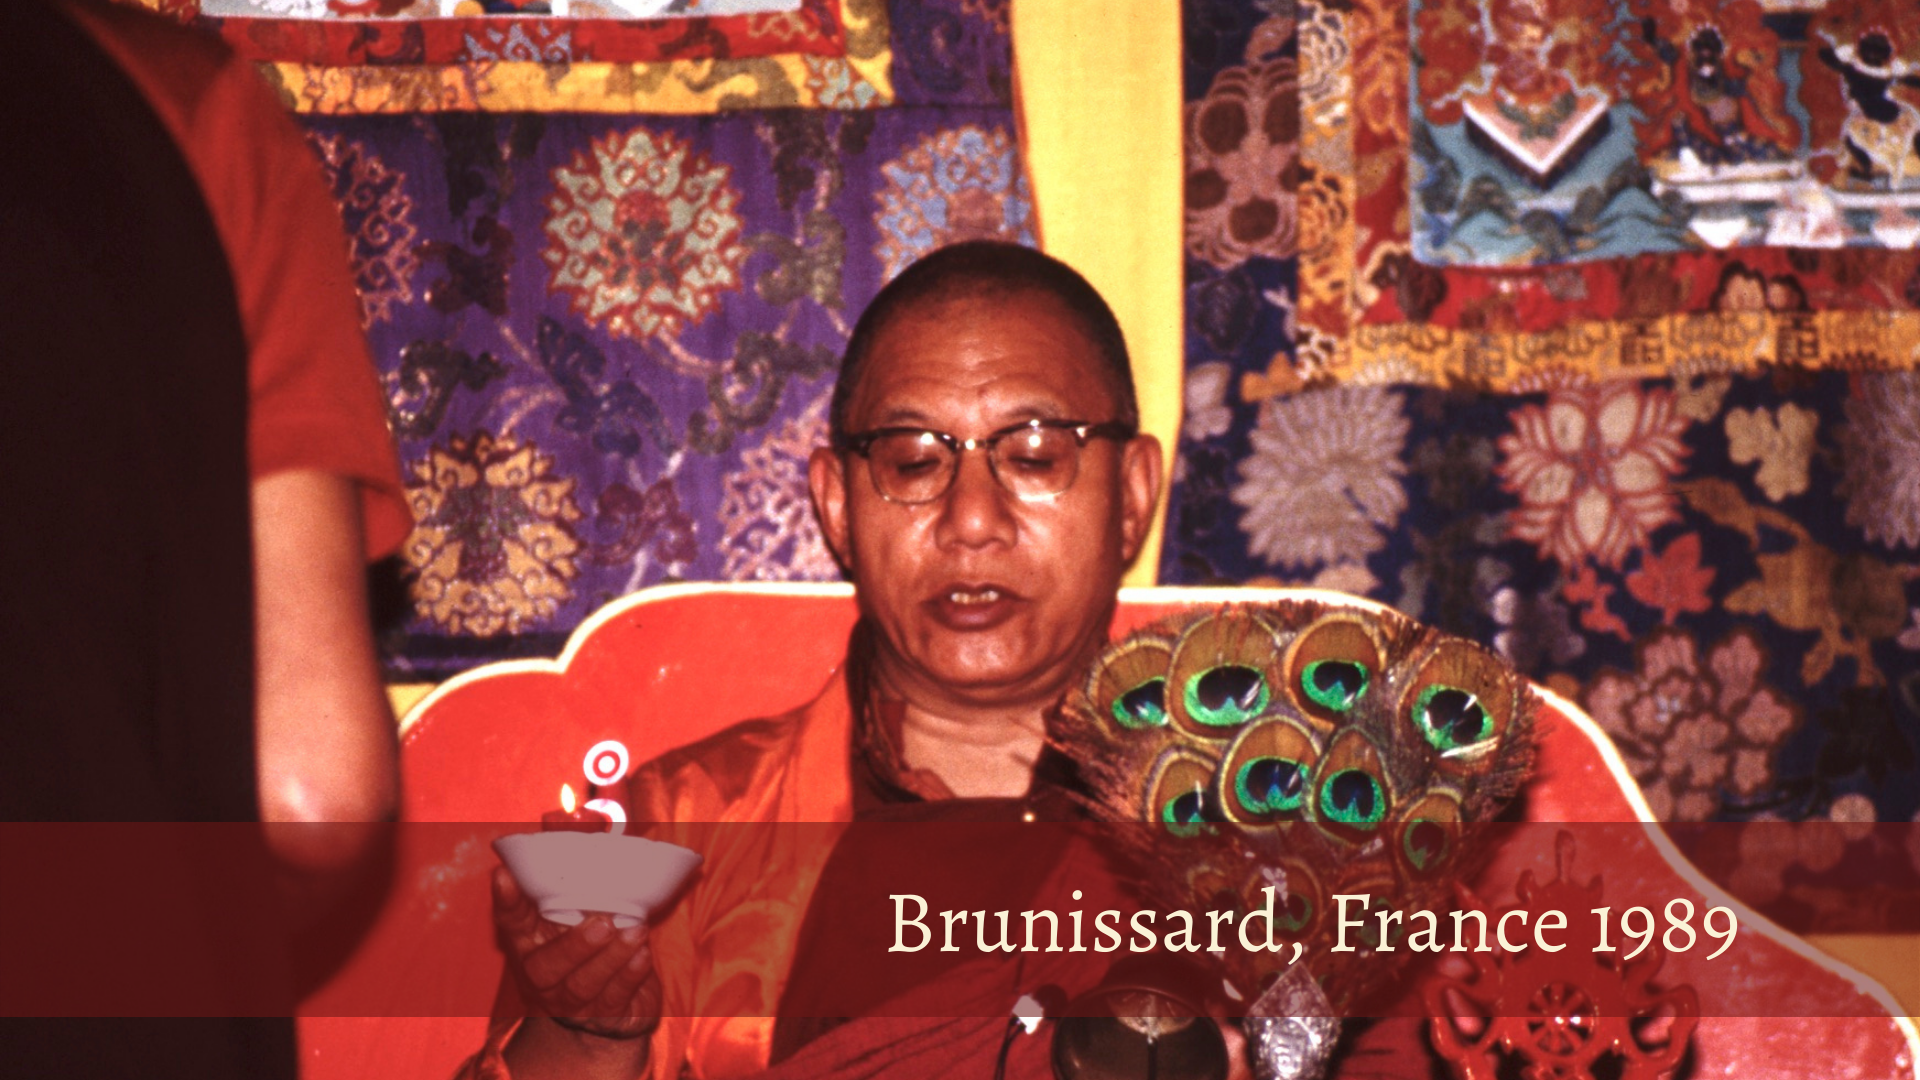 3_Dodrupchen Rinpoche Rigpa Brunissard 1989_2.png